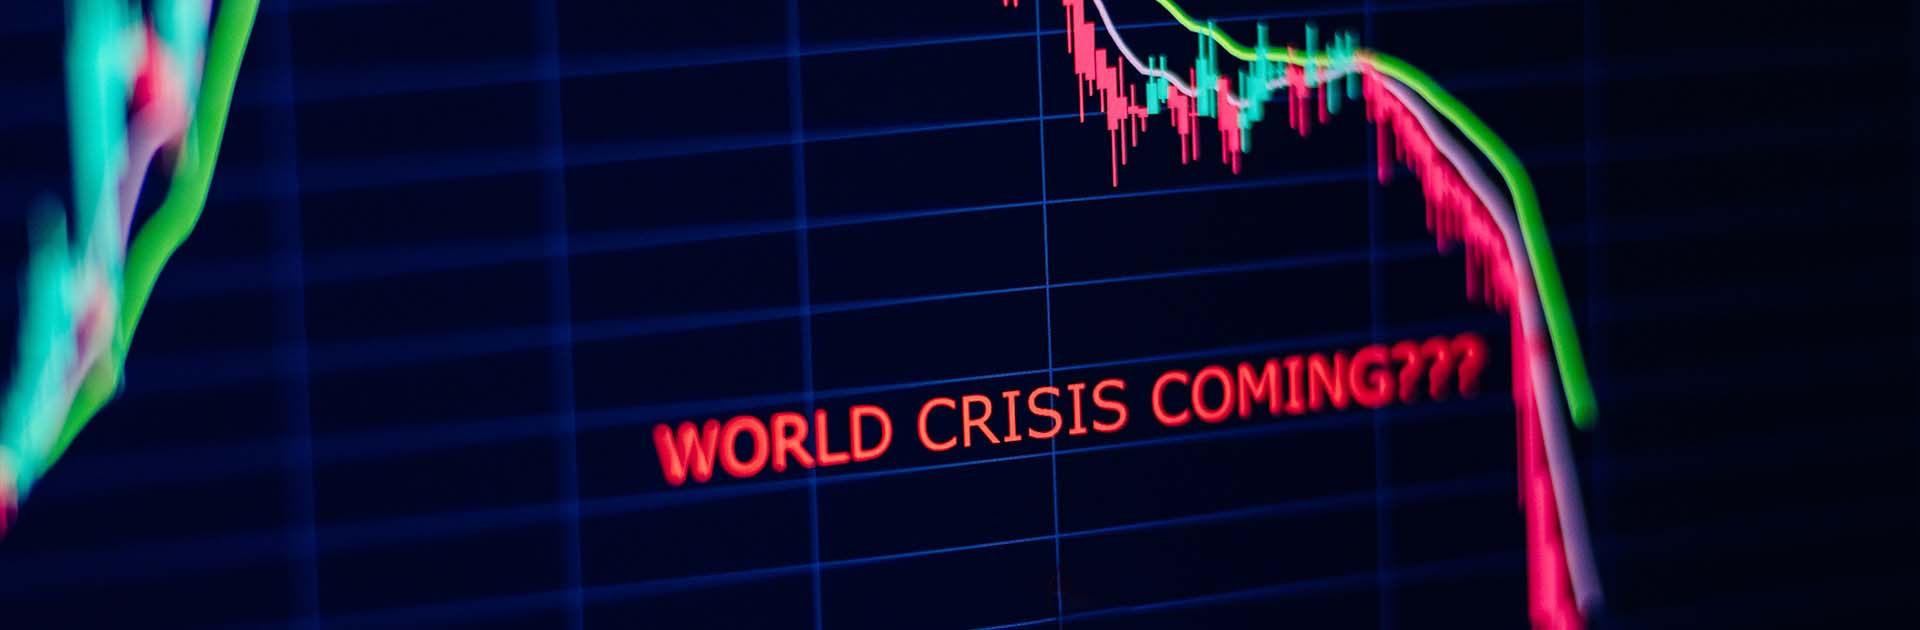 Economía mundial. Imagen de crisis económica con un gráfico de caída y las palabras “world crisis coming?” en inglés